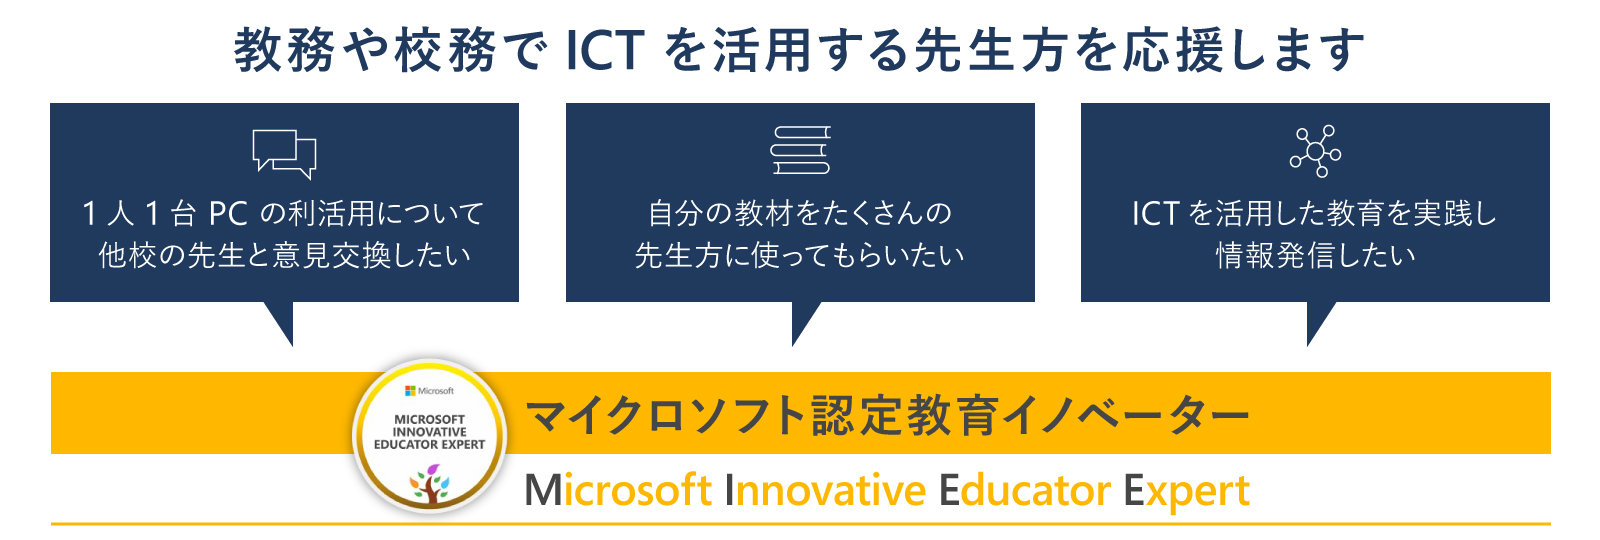 マイクロソフト認定教育イノベーター案内画像